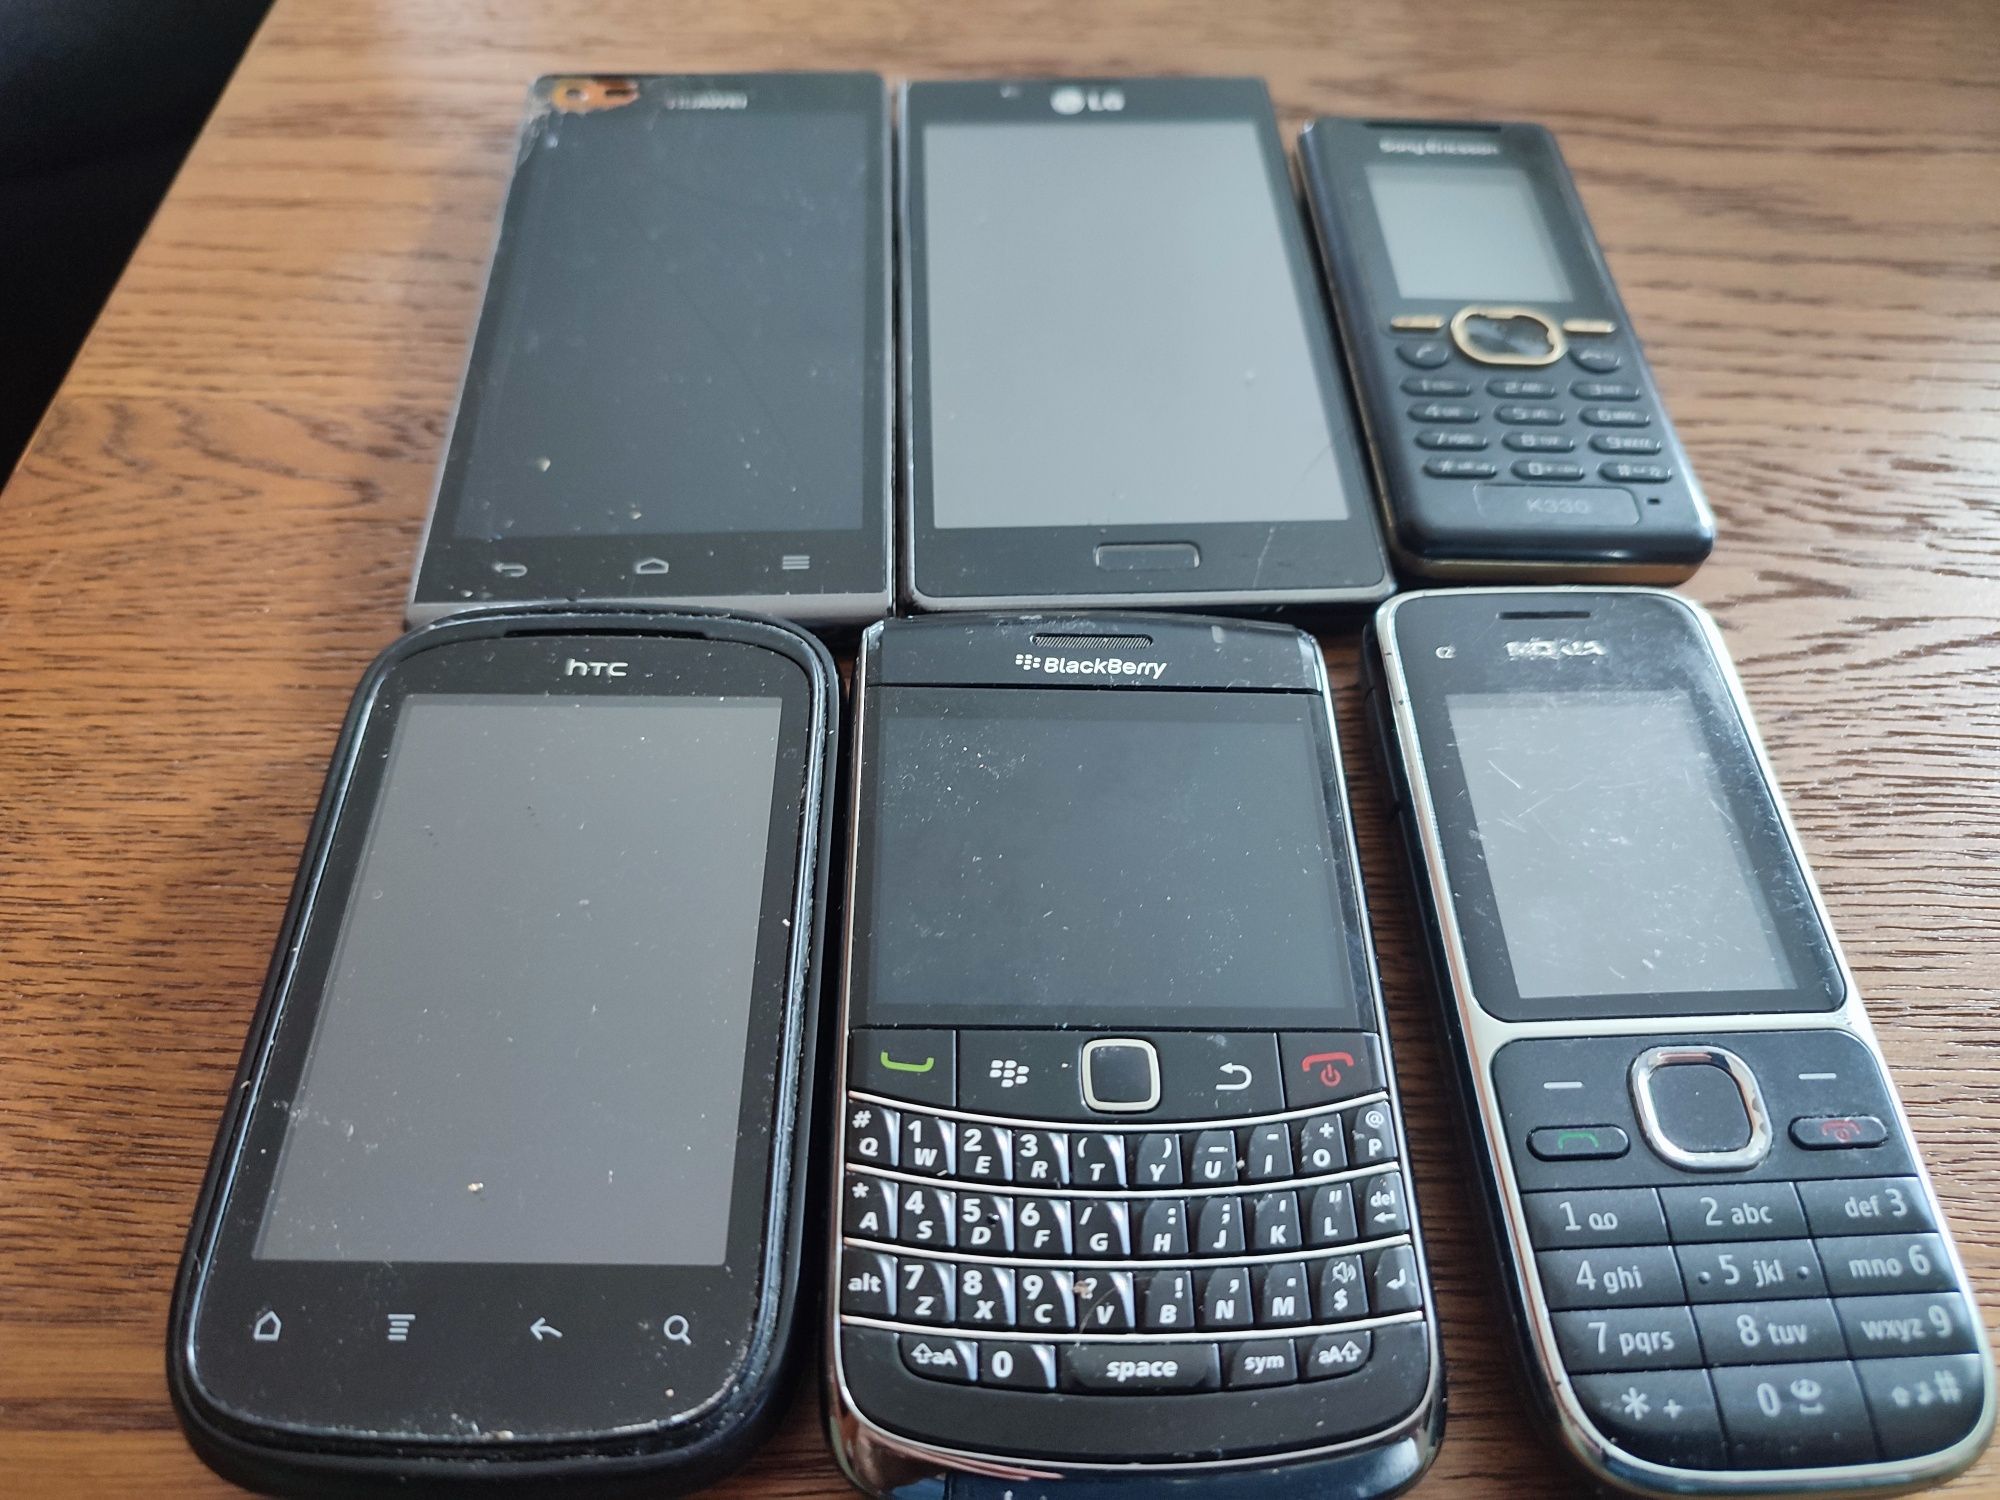 WYPRZEDAŻ! 6 x telefon, nokia c2, BlackBerry, Sony Ericsson, i inne